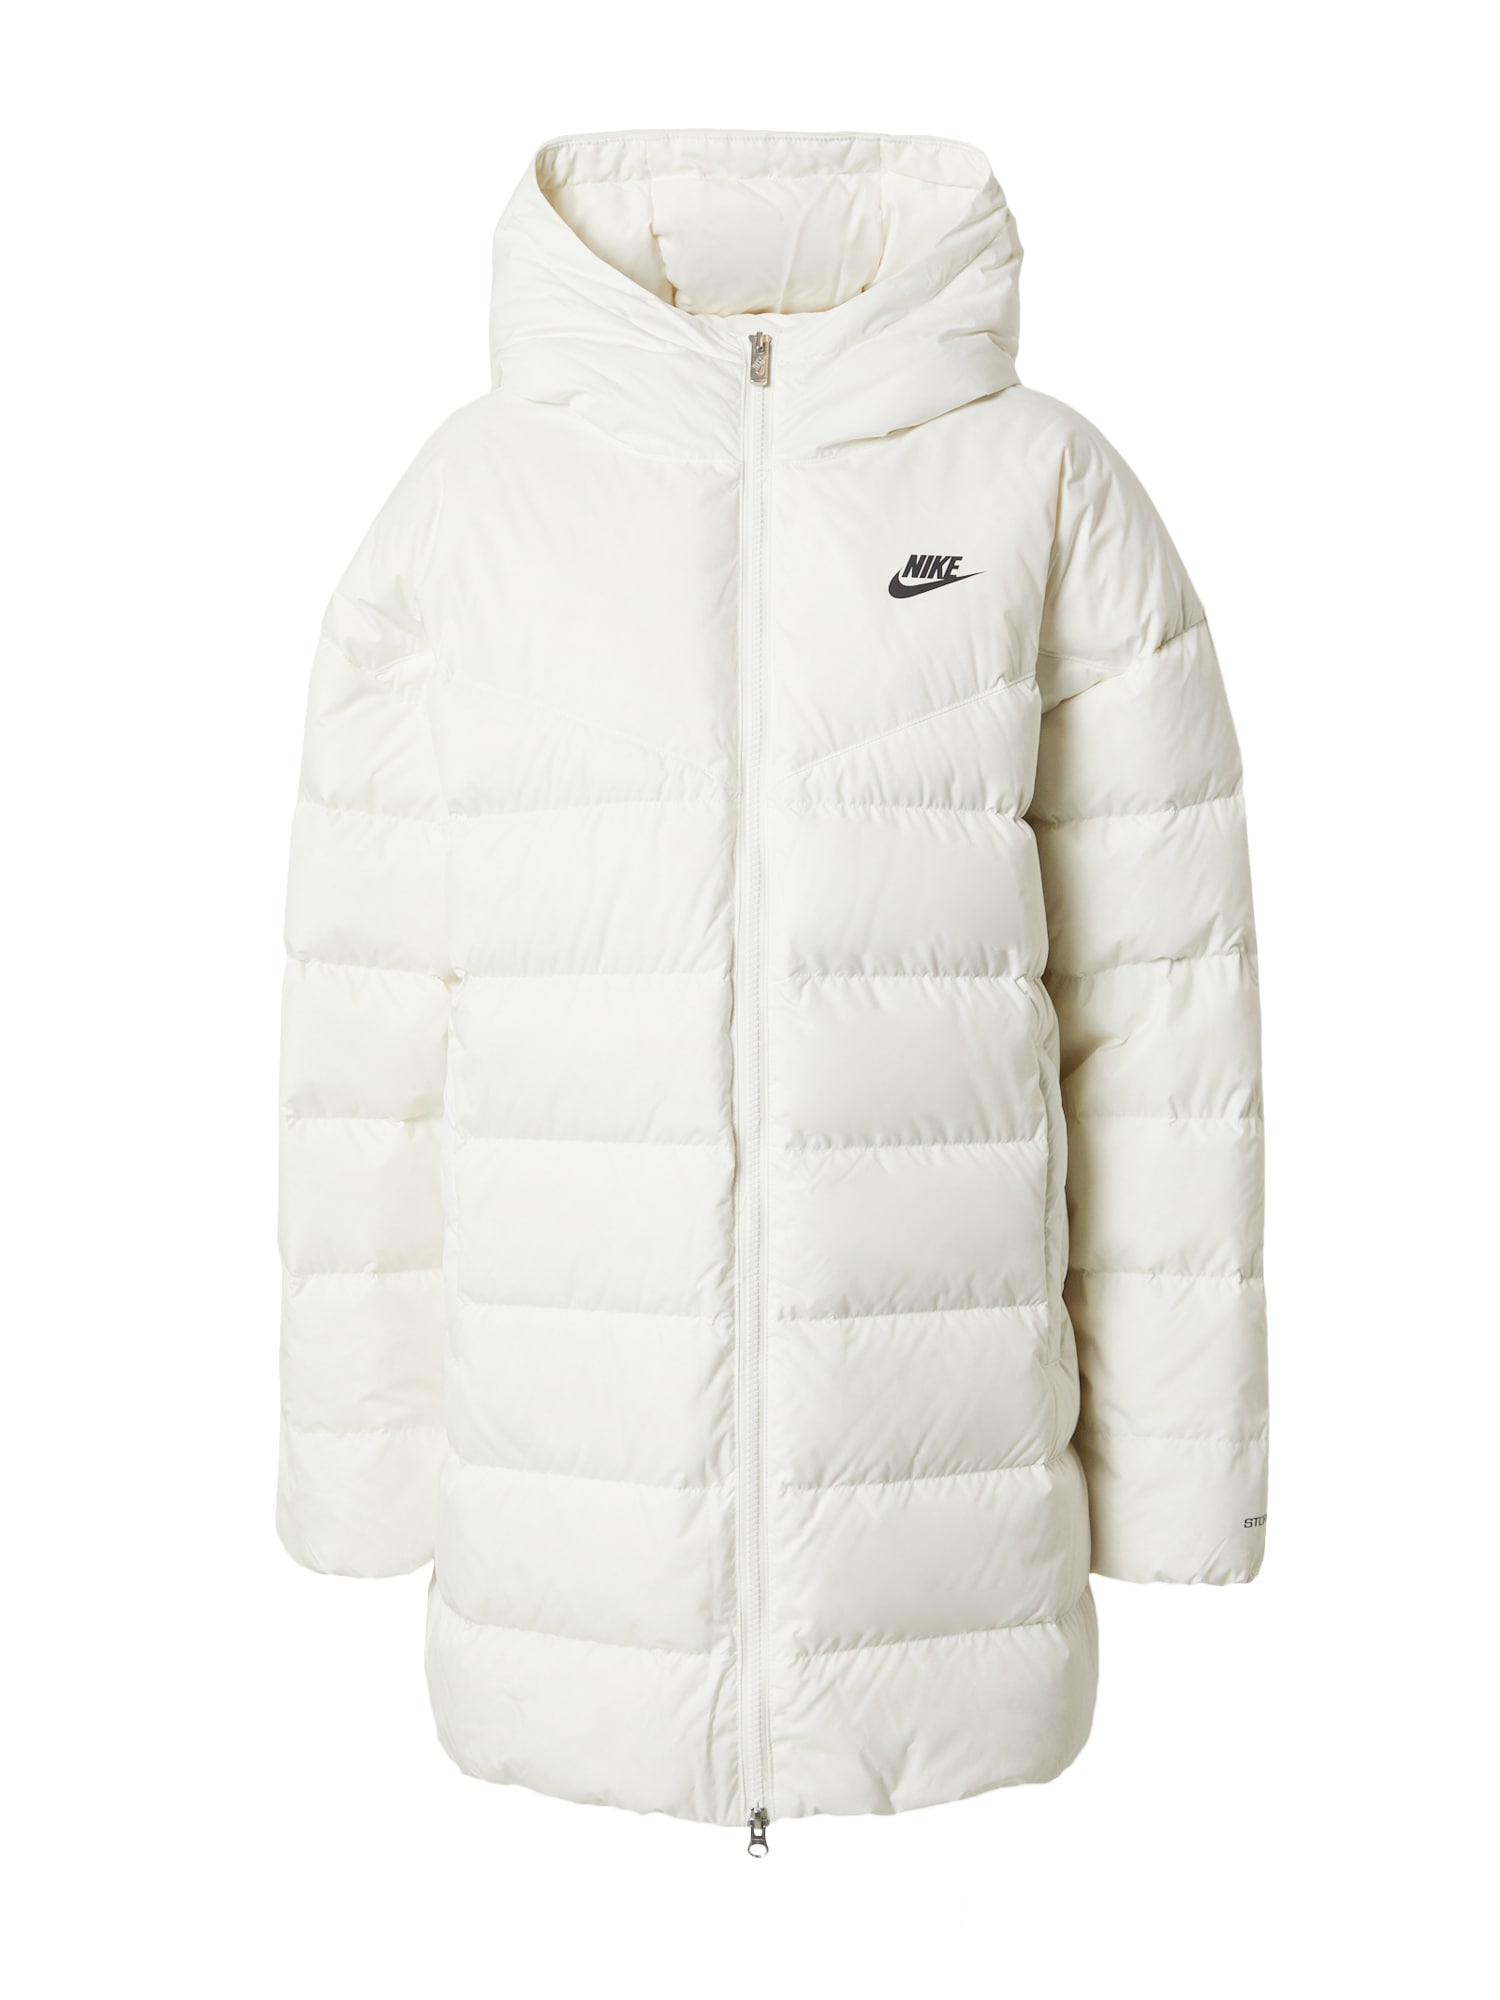 Zimná bunda čierna biela ako vlna Nike Sportswear